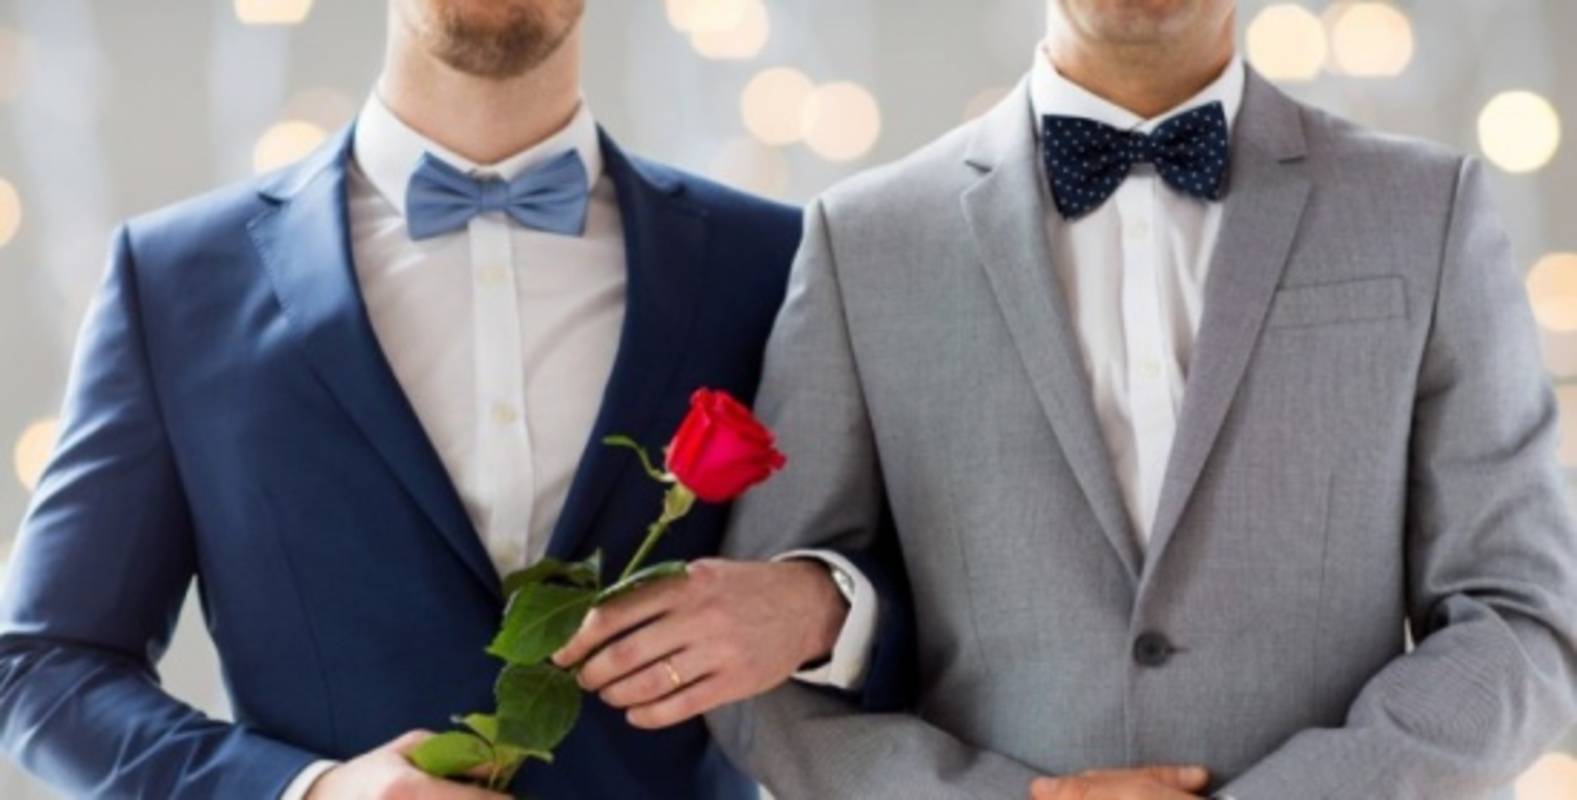 حفل زواج مثلي في سوريا ينتهي بتشميع صالة الأفراح